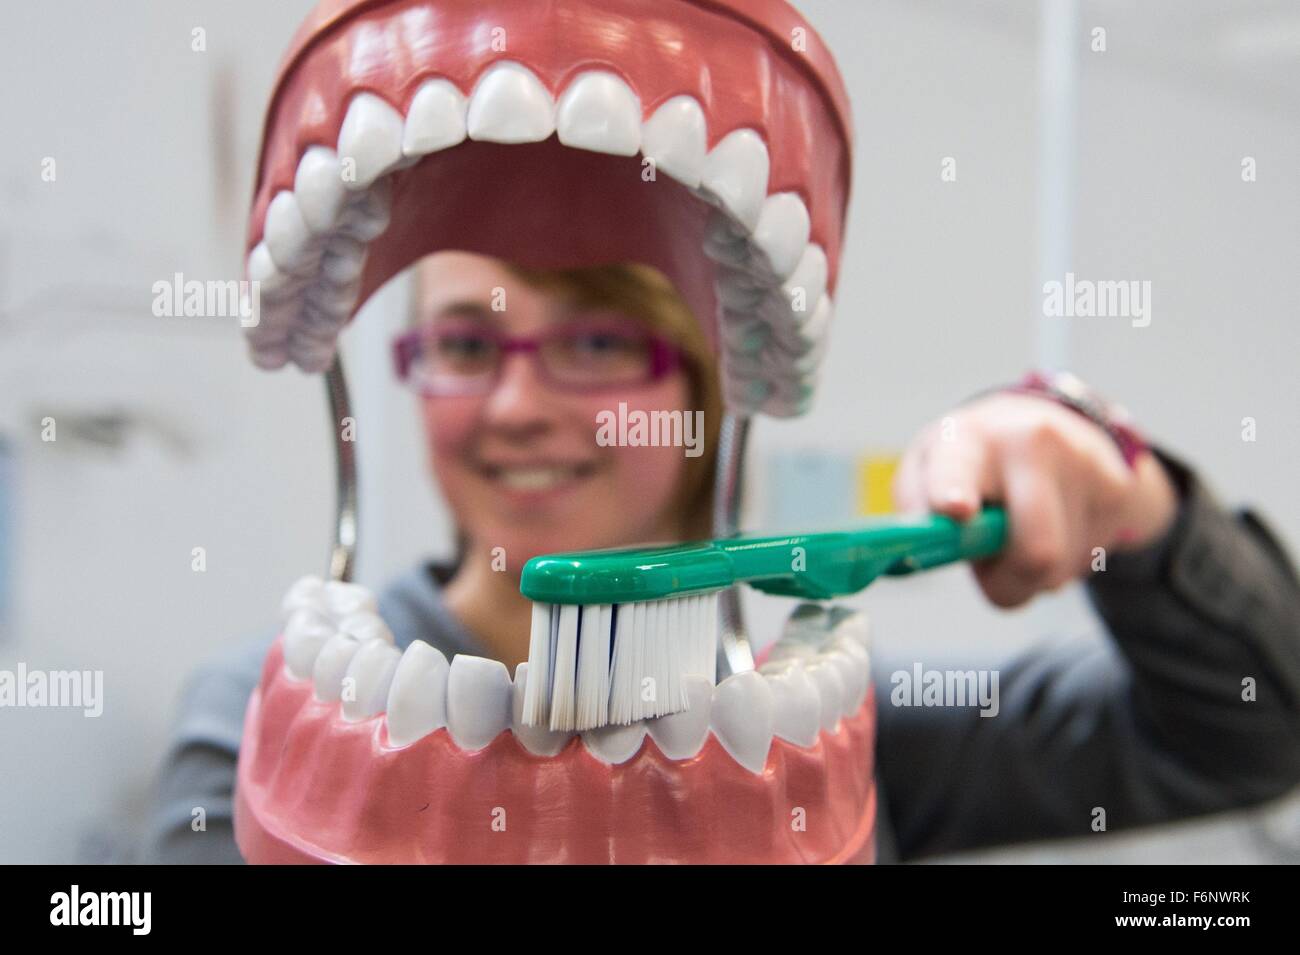 Врач который делает зубы. Зубы стоматолог. Профессиональная чистка зубов. Профессиональная гигиена полости рта. Чистка зубов в стоматологии.